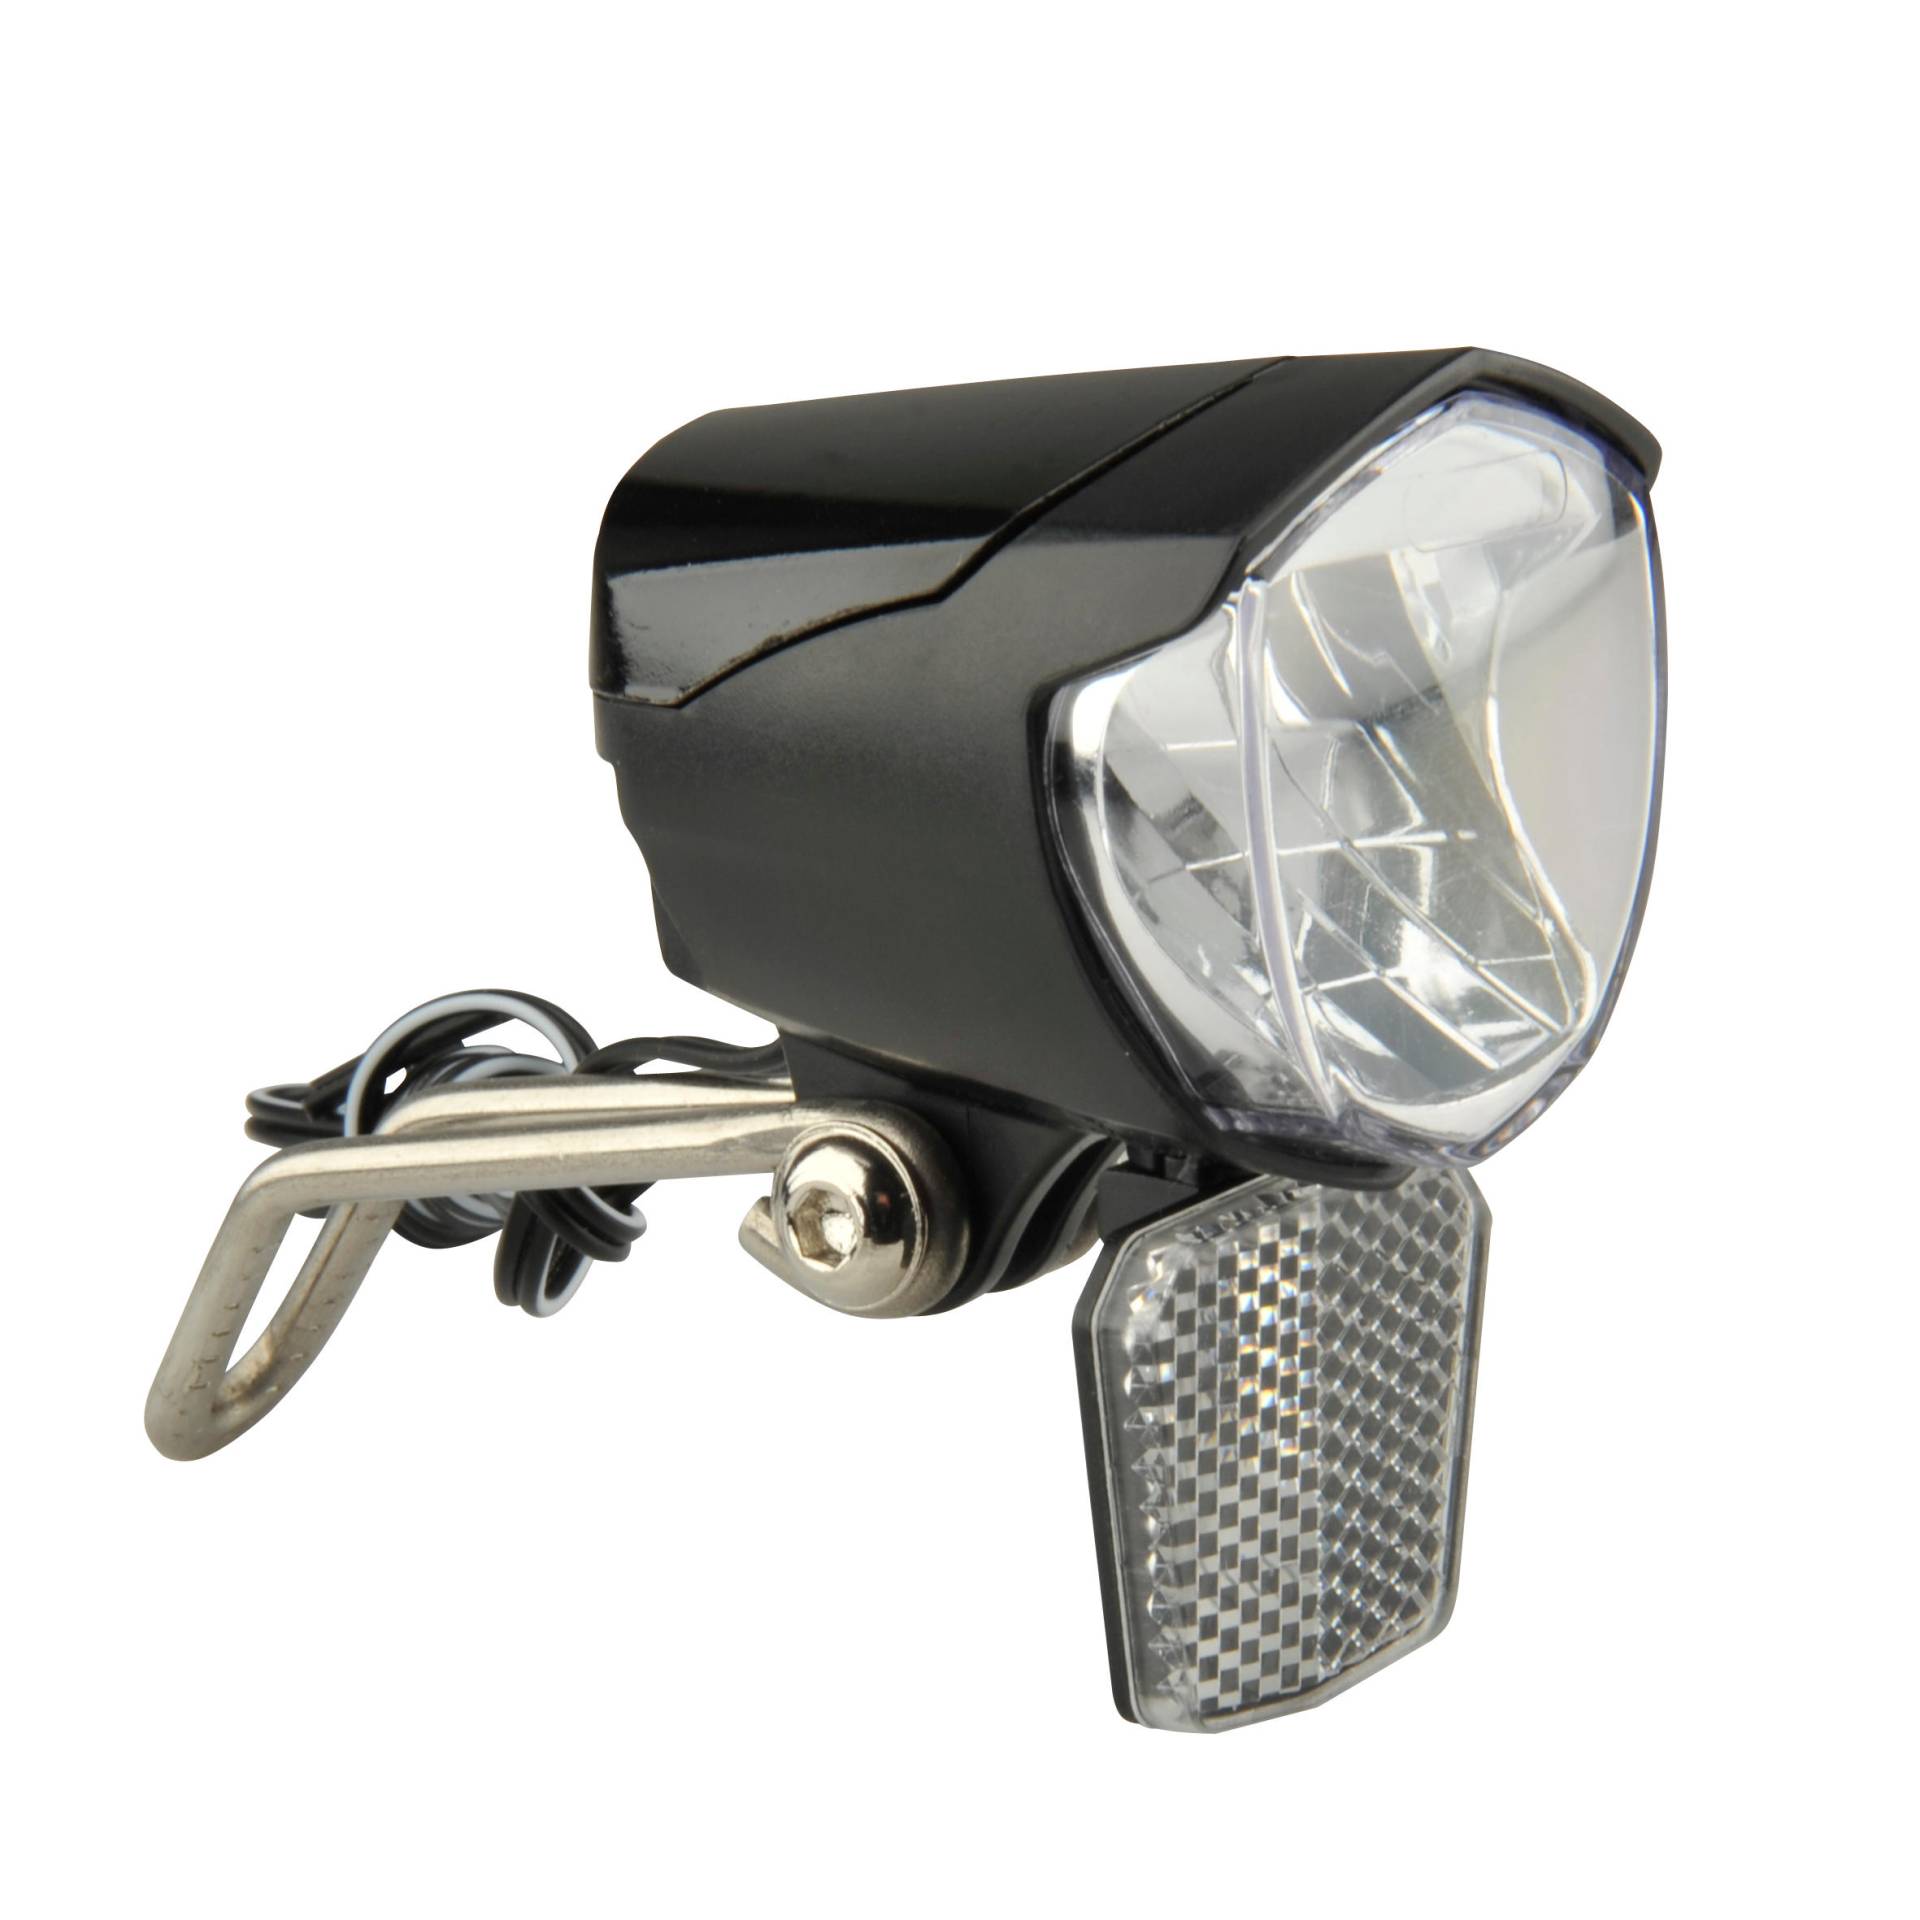 Fahrradbeleuchtung Frontlicht LED 70 Lux Dynamobetrieb von NO BRAND